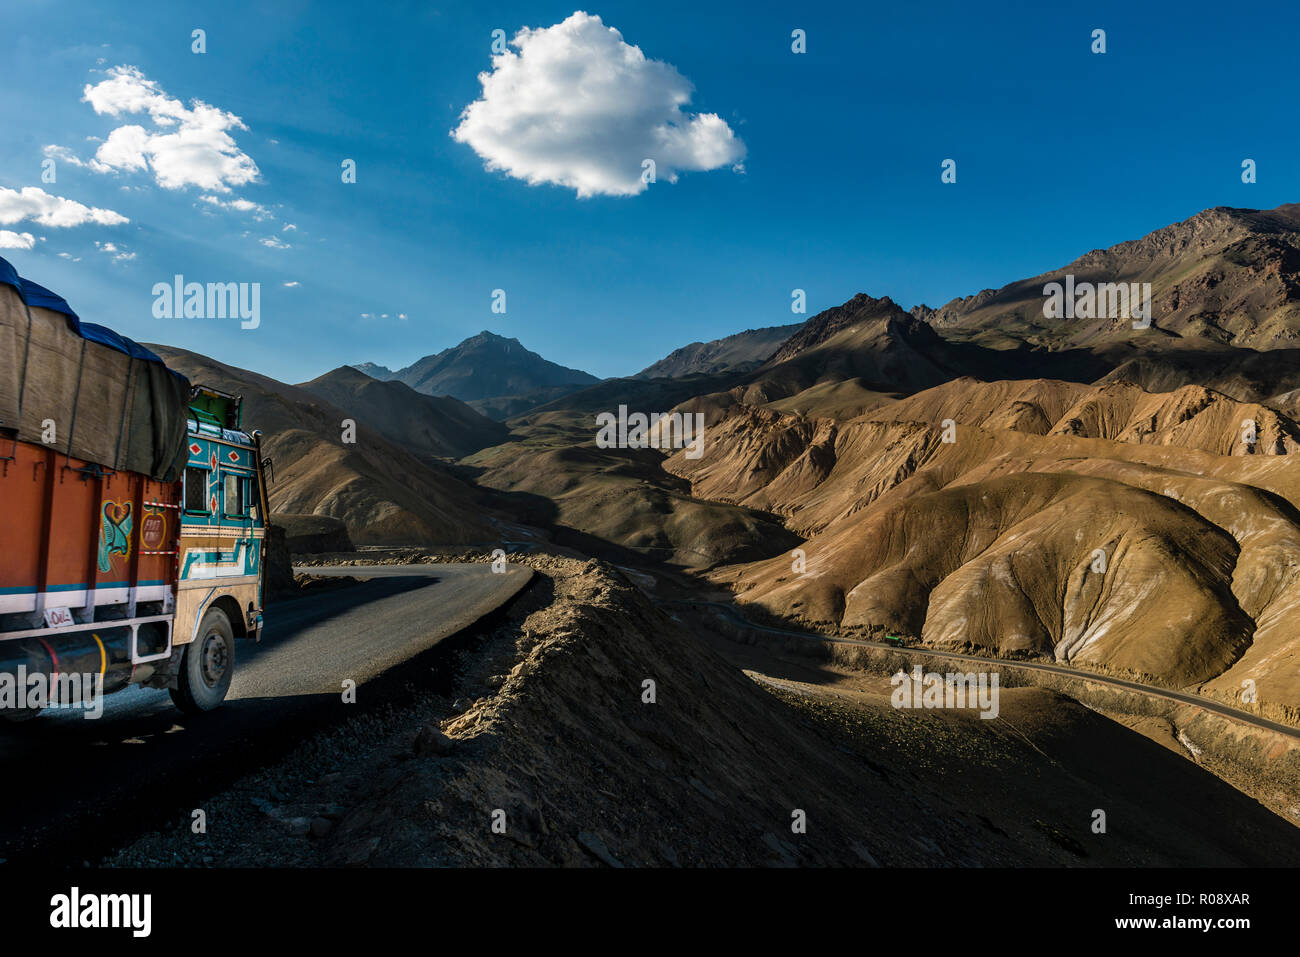 Ein Lkw fahren hinunter nach Lamayuru auf Srinagar-Leh-Highway durch eine karge Landschaft mit blauem Himmel und weißen Wolken, auf einer Höhe von 4.000 entfernt Stockfoto